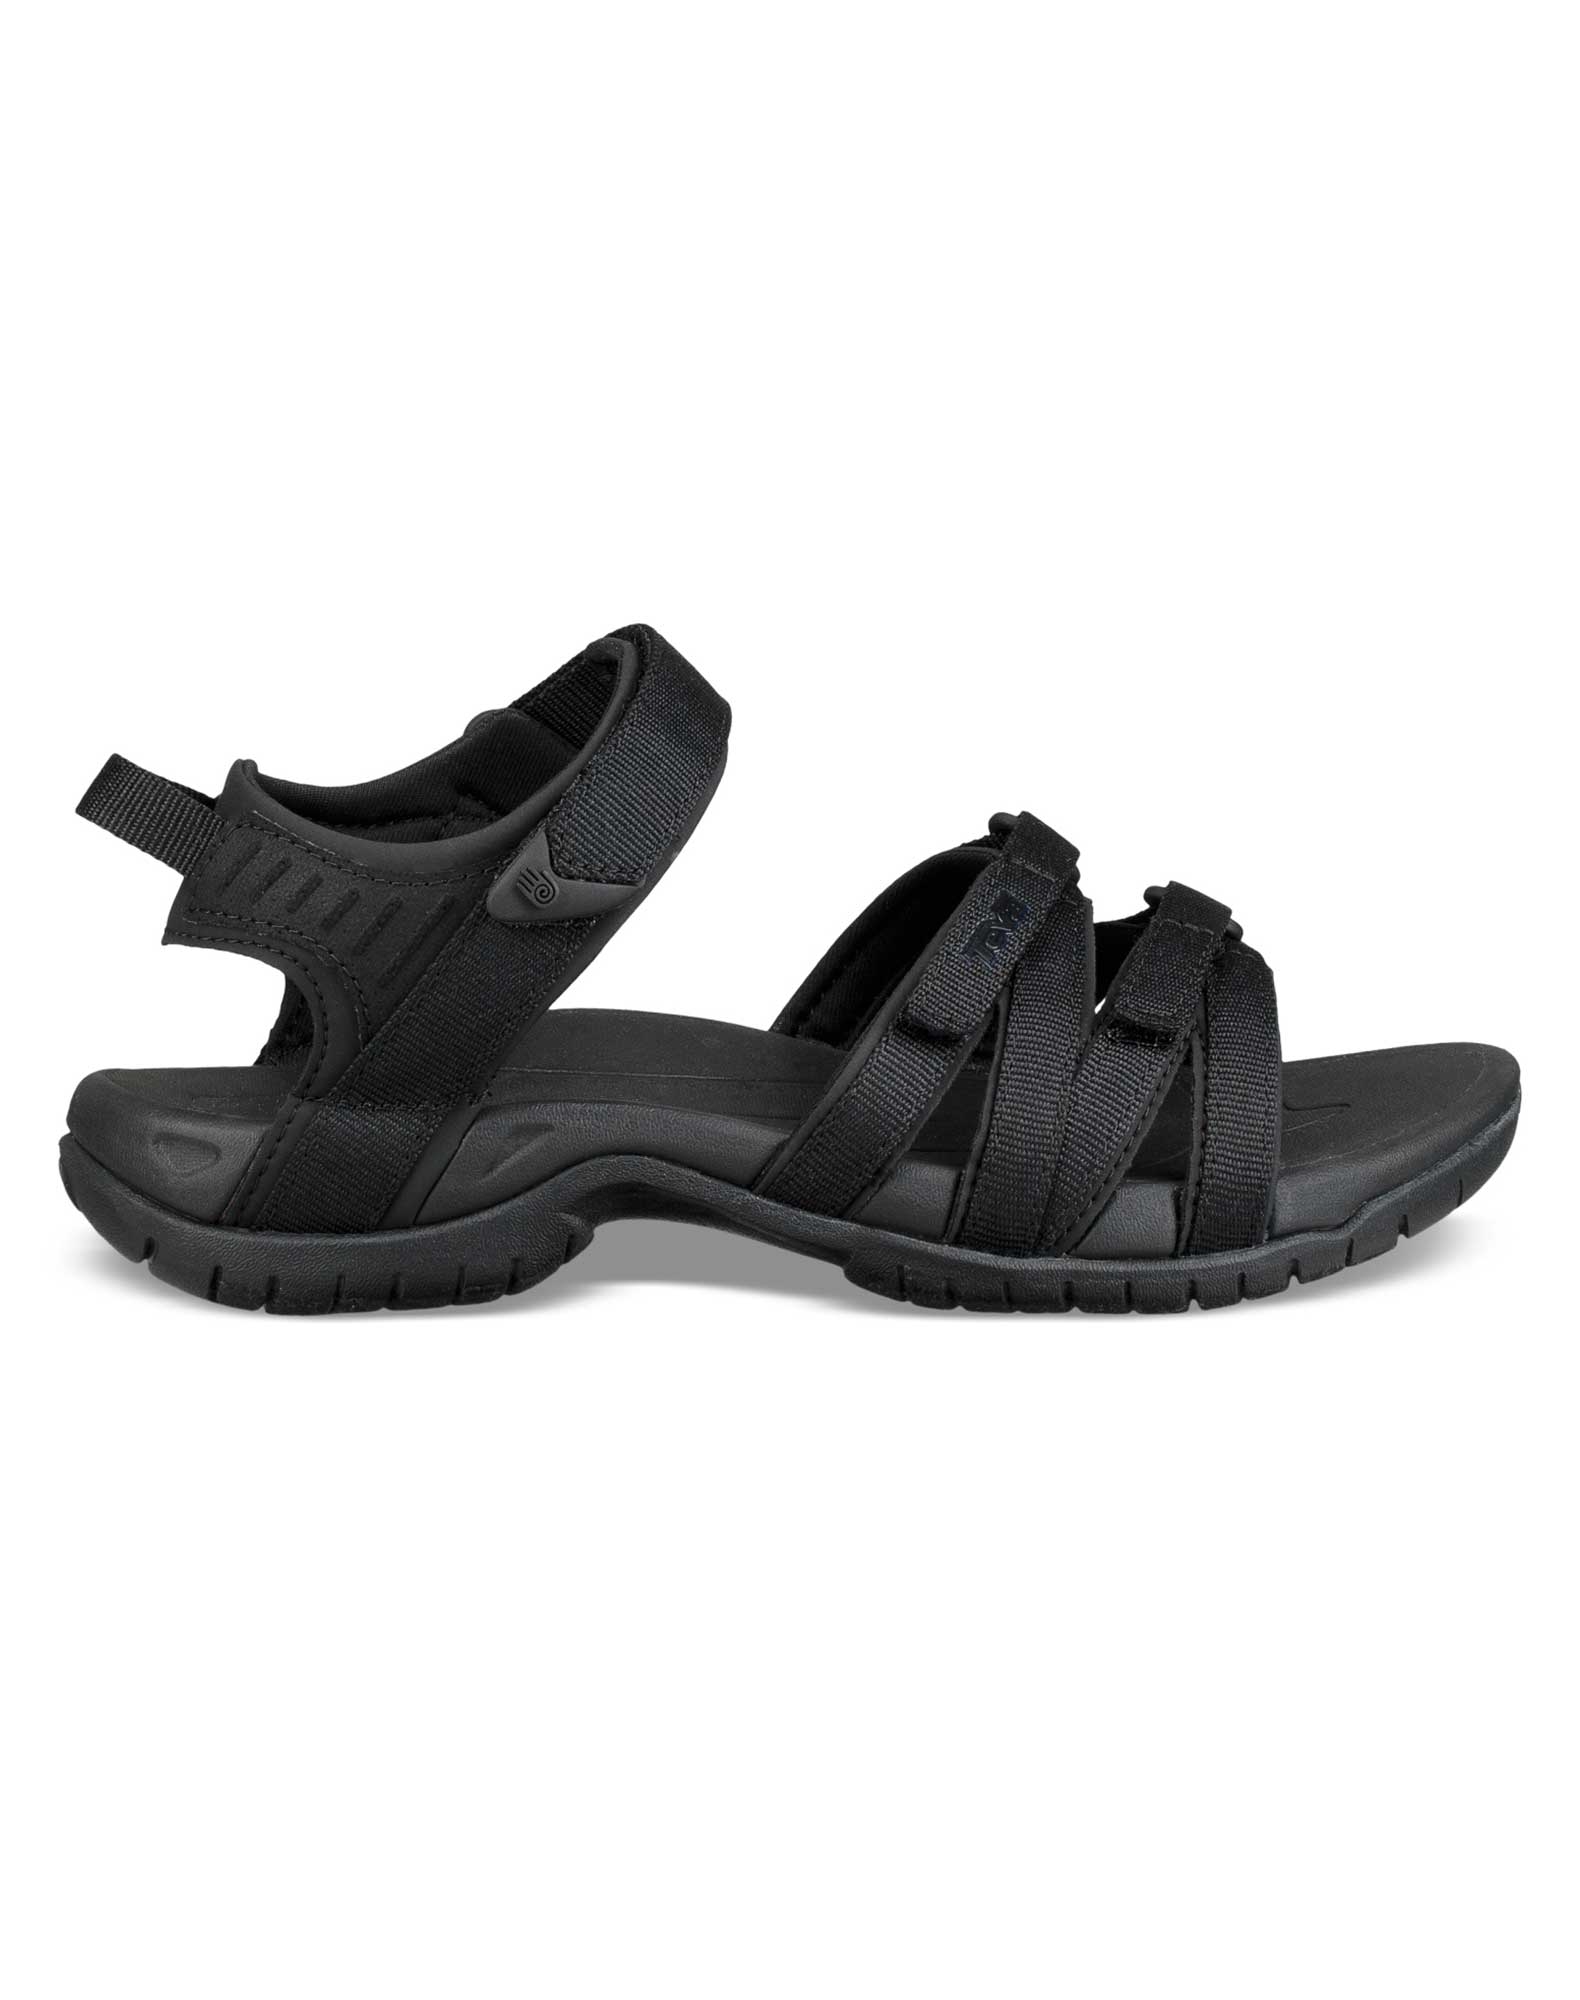 Køb TEVA Tirra sandaler til dame sort